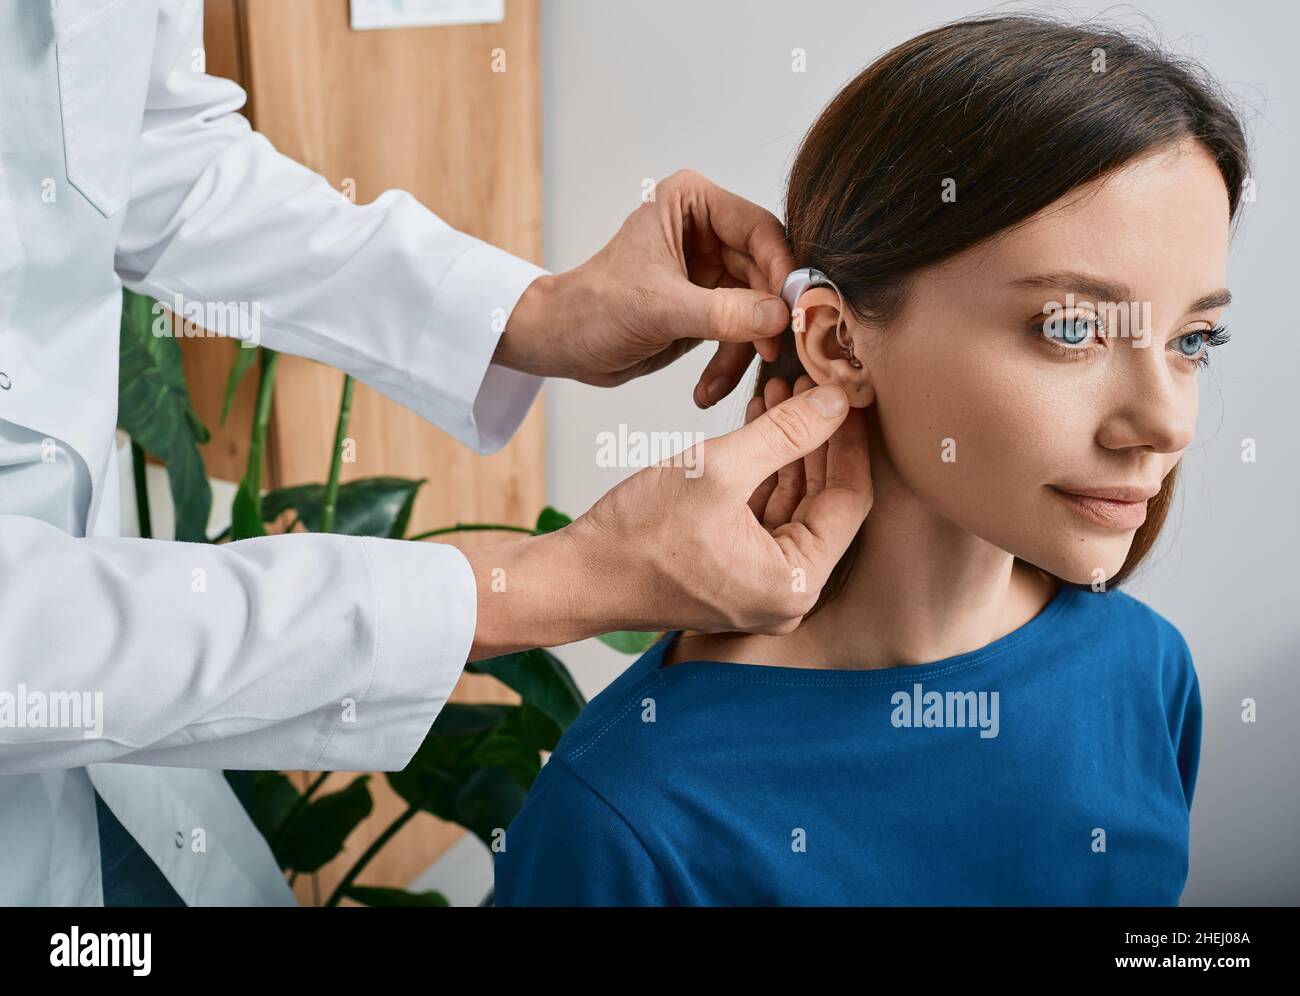 Installation d'une prothèse auditive sur l'oreille d'une femme à la clinique d'audition, vue rapprochée, vue latérale.Traitement de la surdité, solutions auditives Banque D'Images